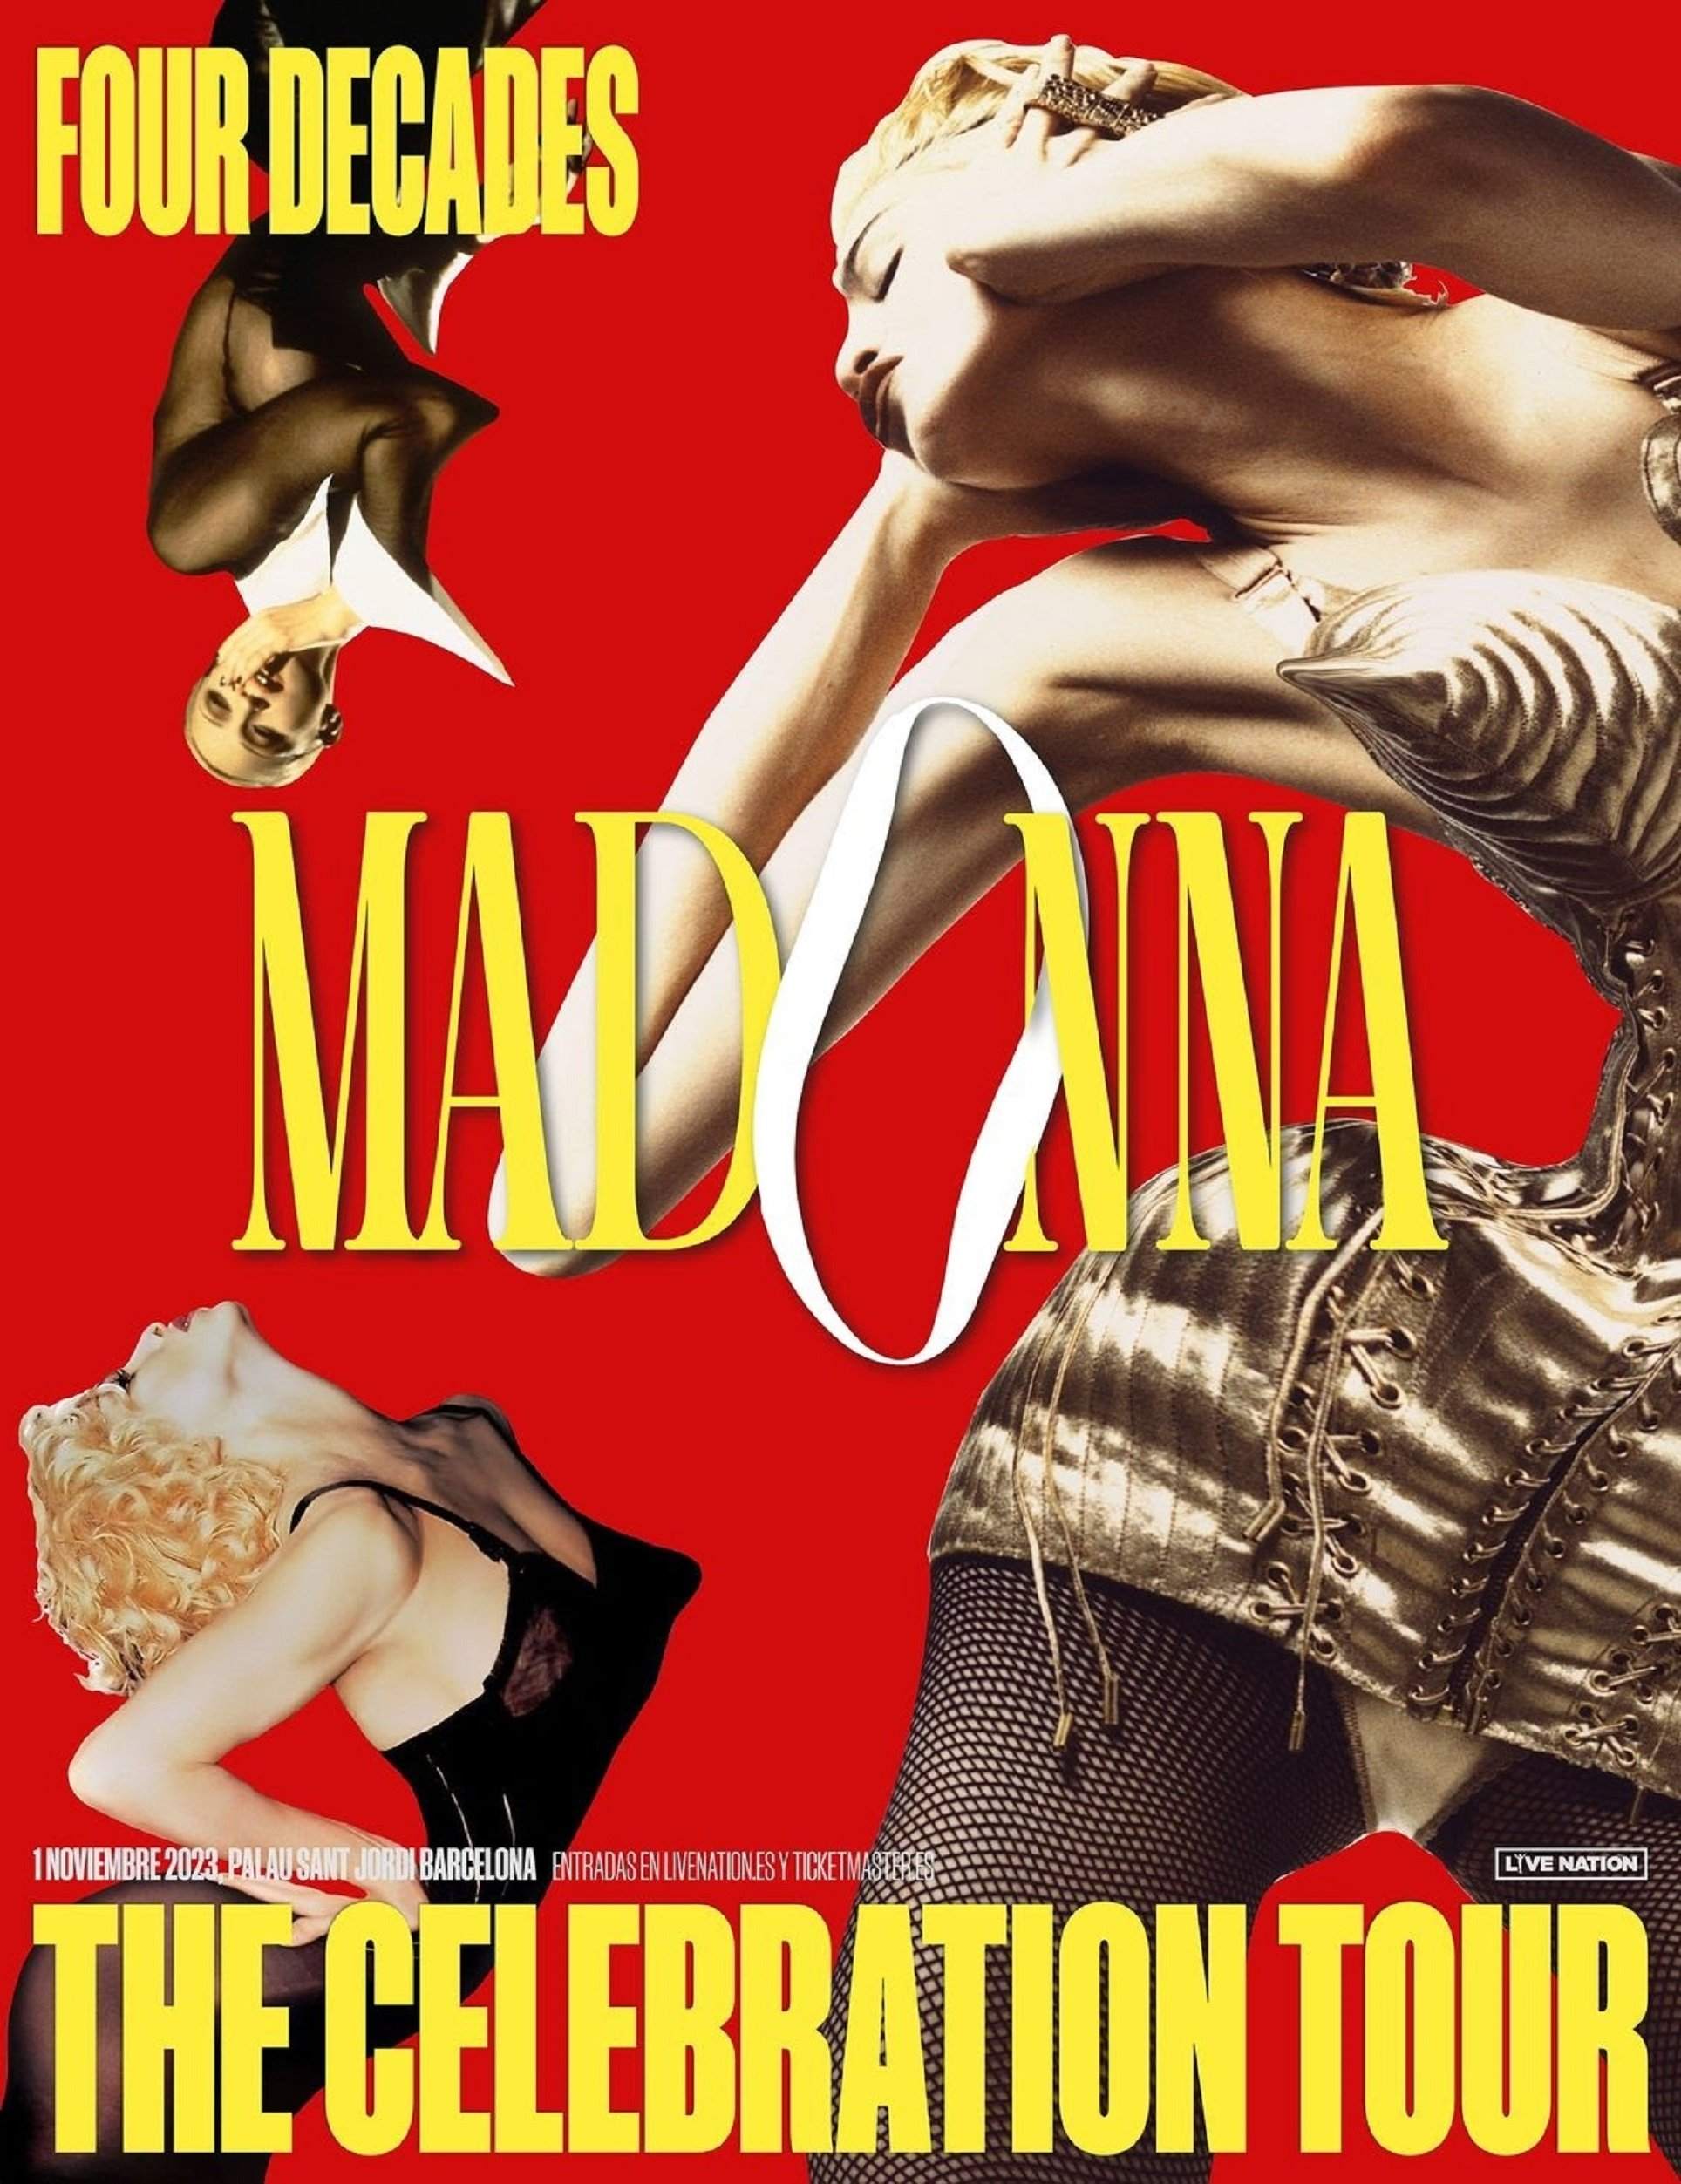 Madonna confirma les dates de la gira europea: actuarà a Barcelona l'1 i 2 de novembre